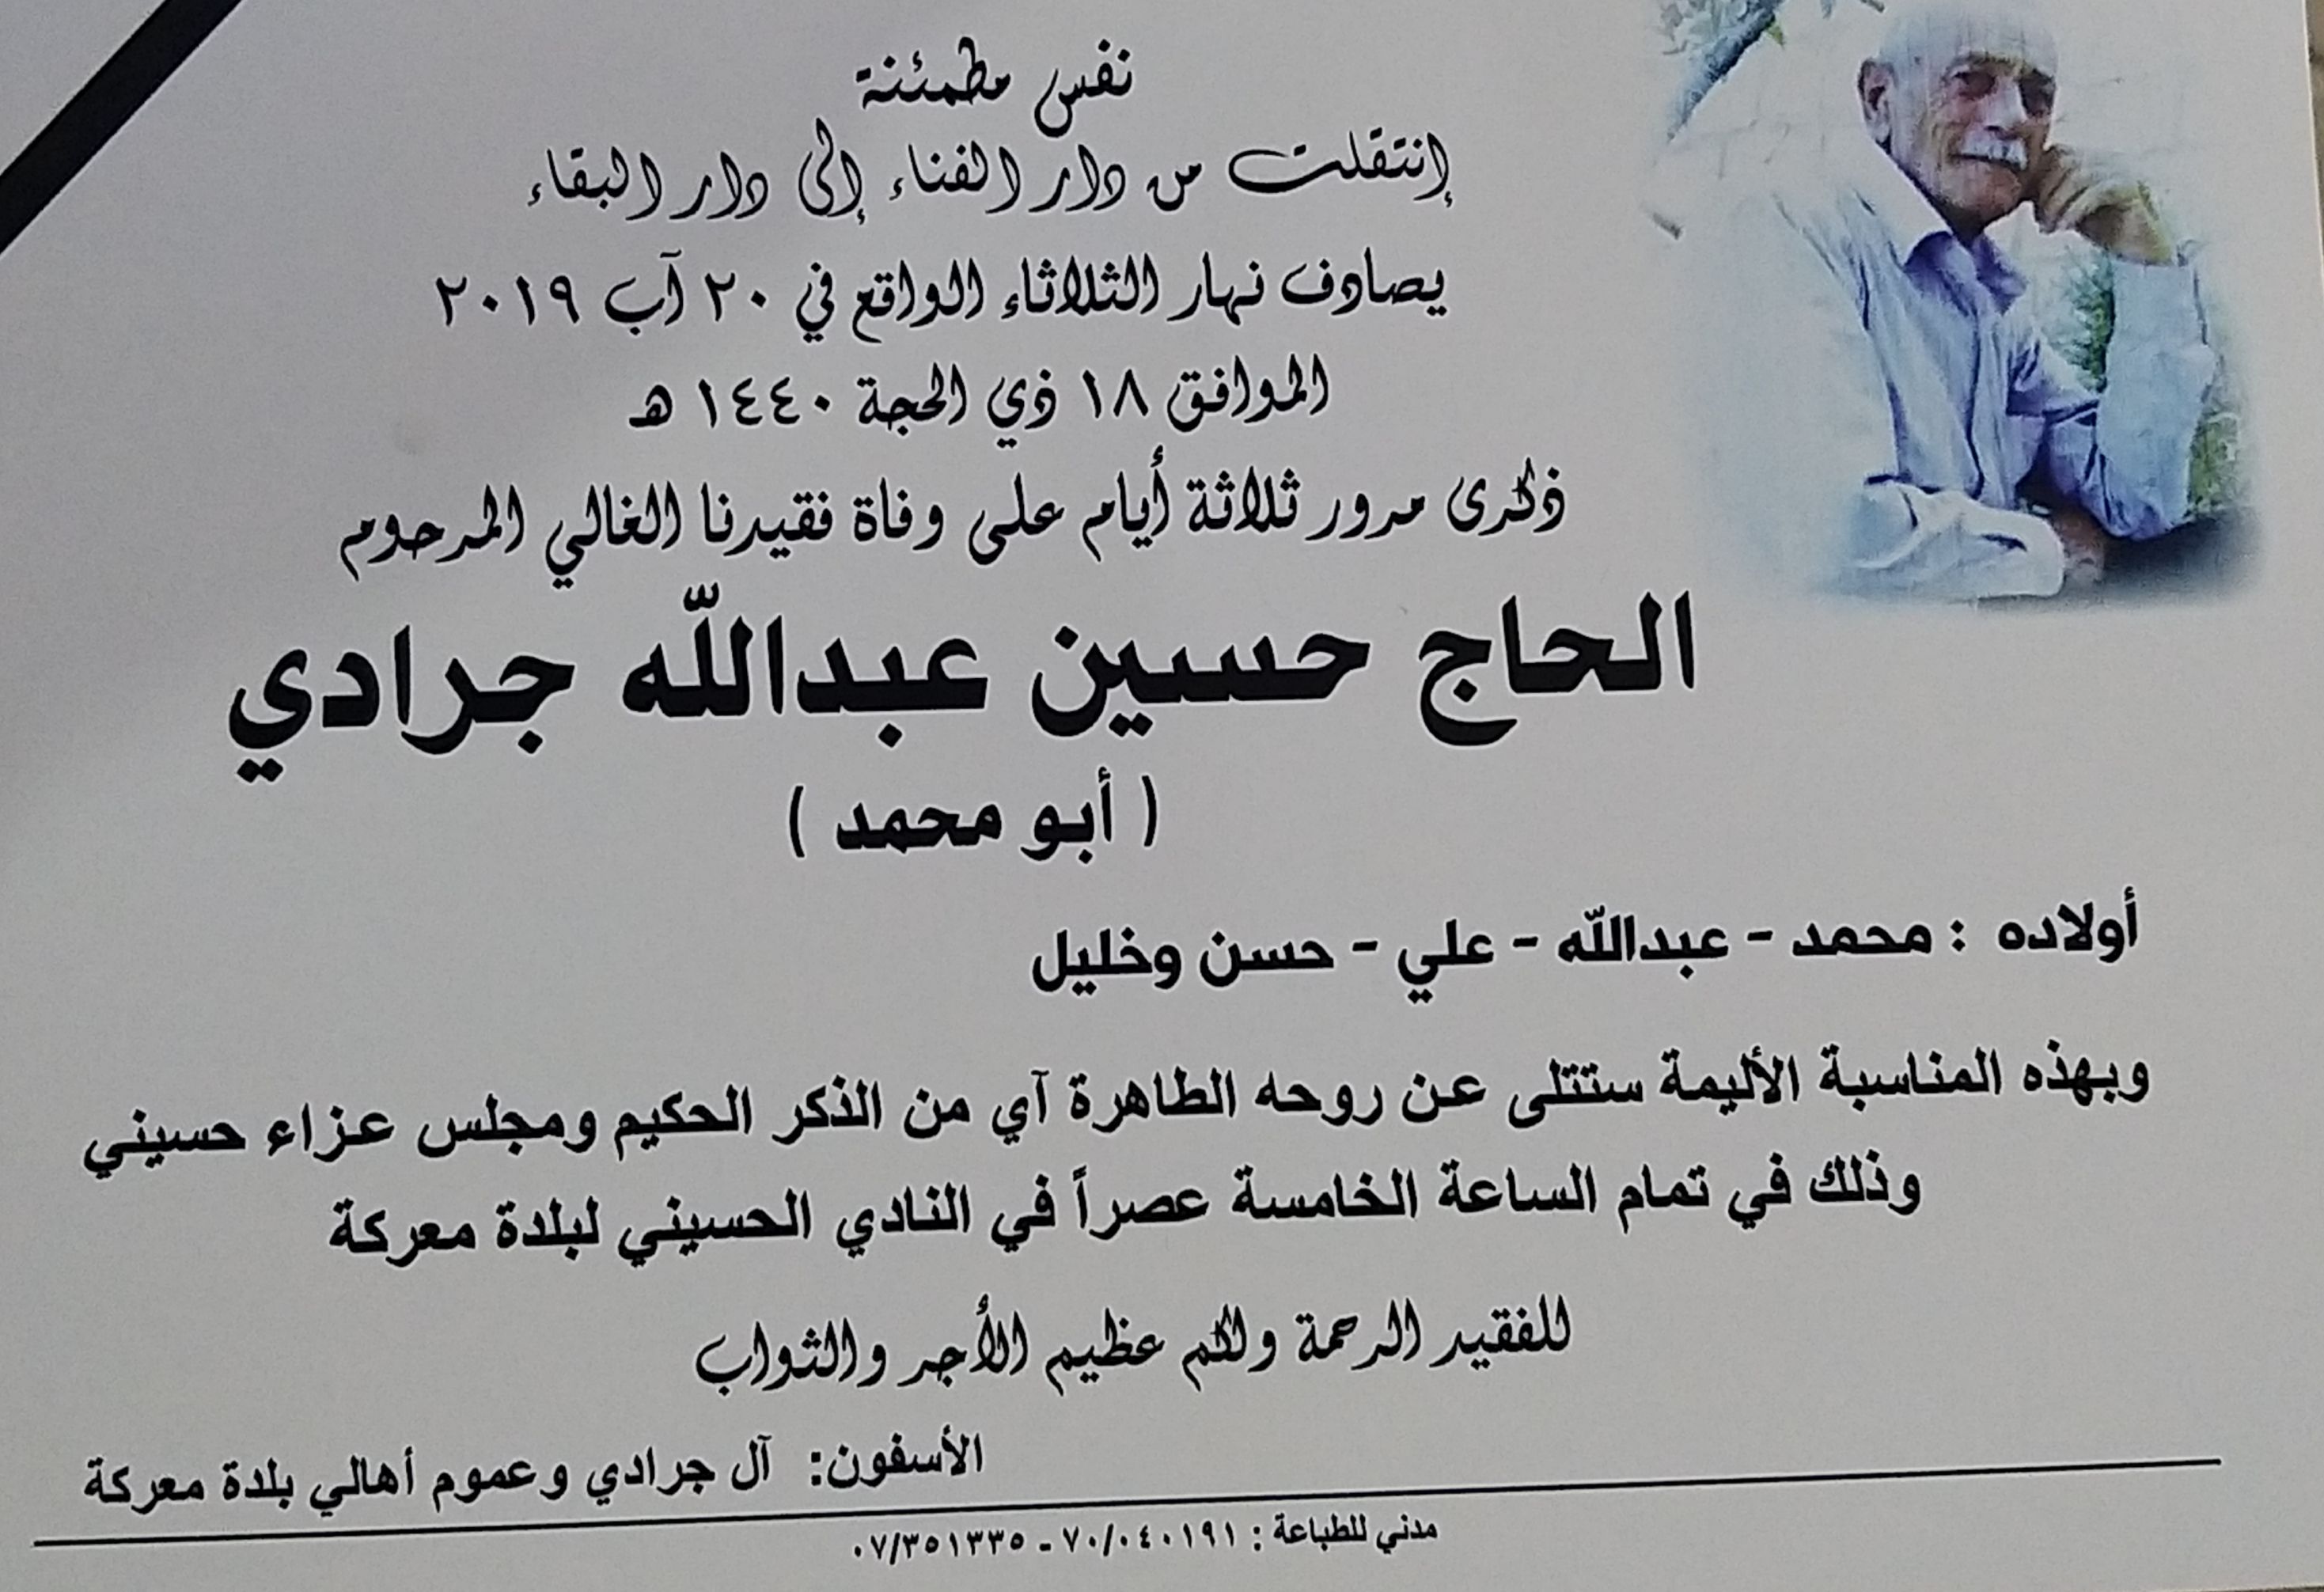 دعوة لحضور ذكرى مرورثلاثة أيام على وفاة فقيدنا الغالي المرحوم الحاج حسين عبدالله جرادي (ابو محمد) في حسينية بلدة معركة